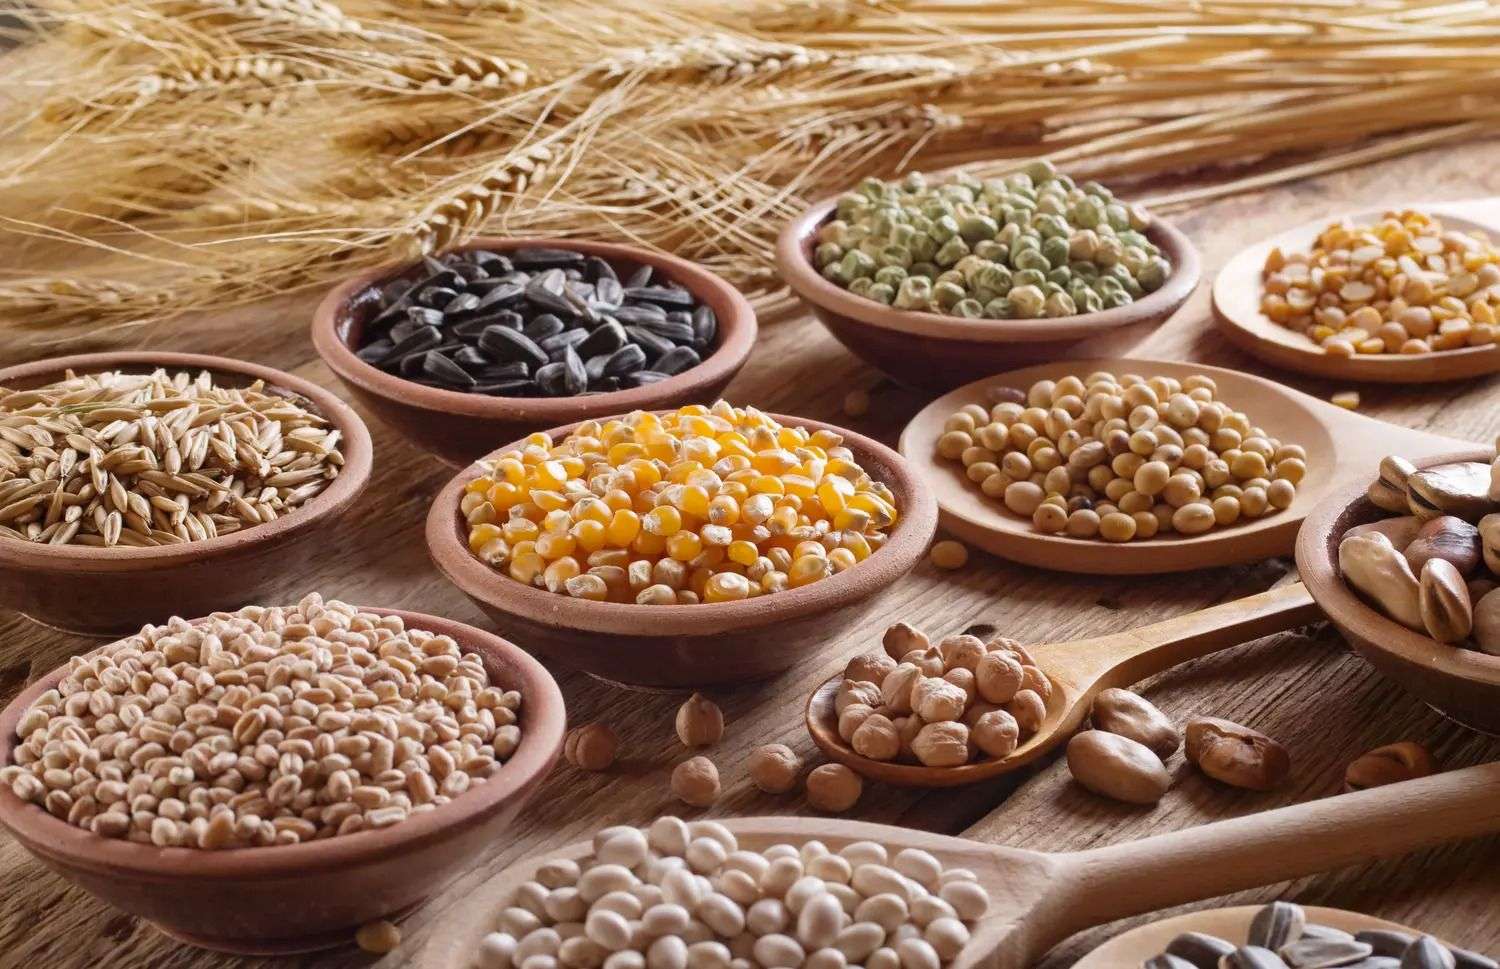 Votat de Parlament: Importul de cereale și oleaginoase va fi licențiat - agroexpert.md